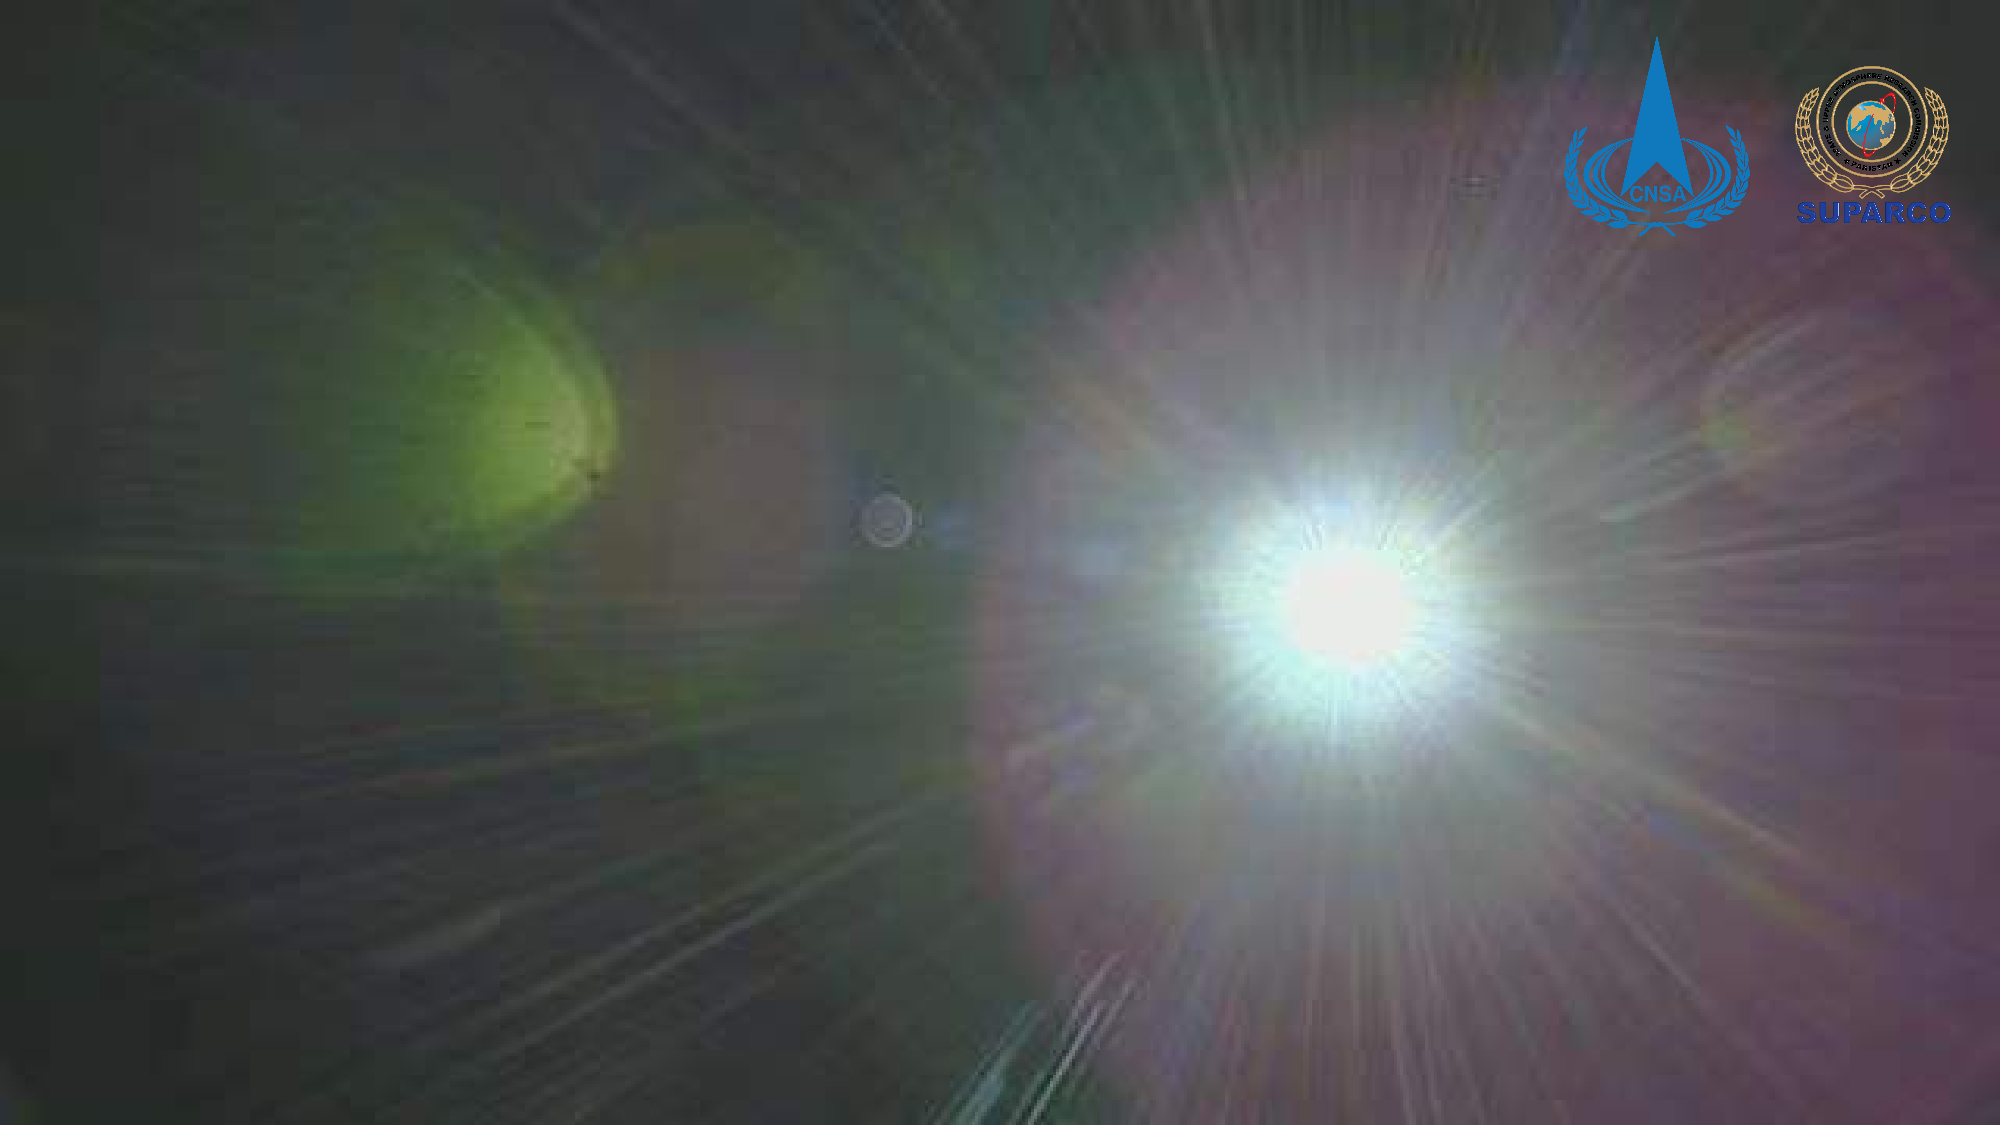 嫦娥六号搭载的巴基斯坦立方星首幅影像揭幕